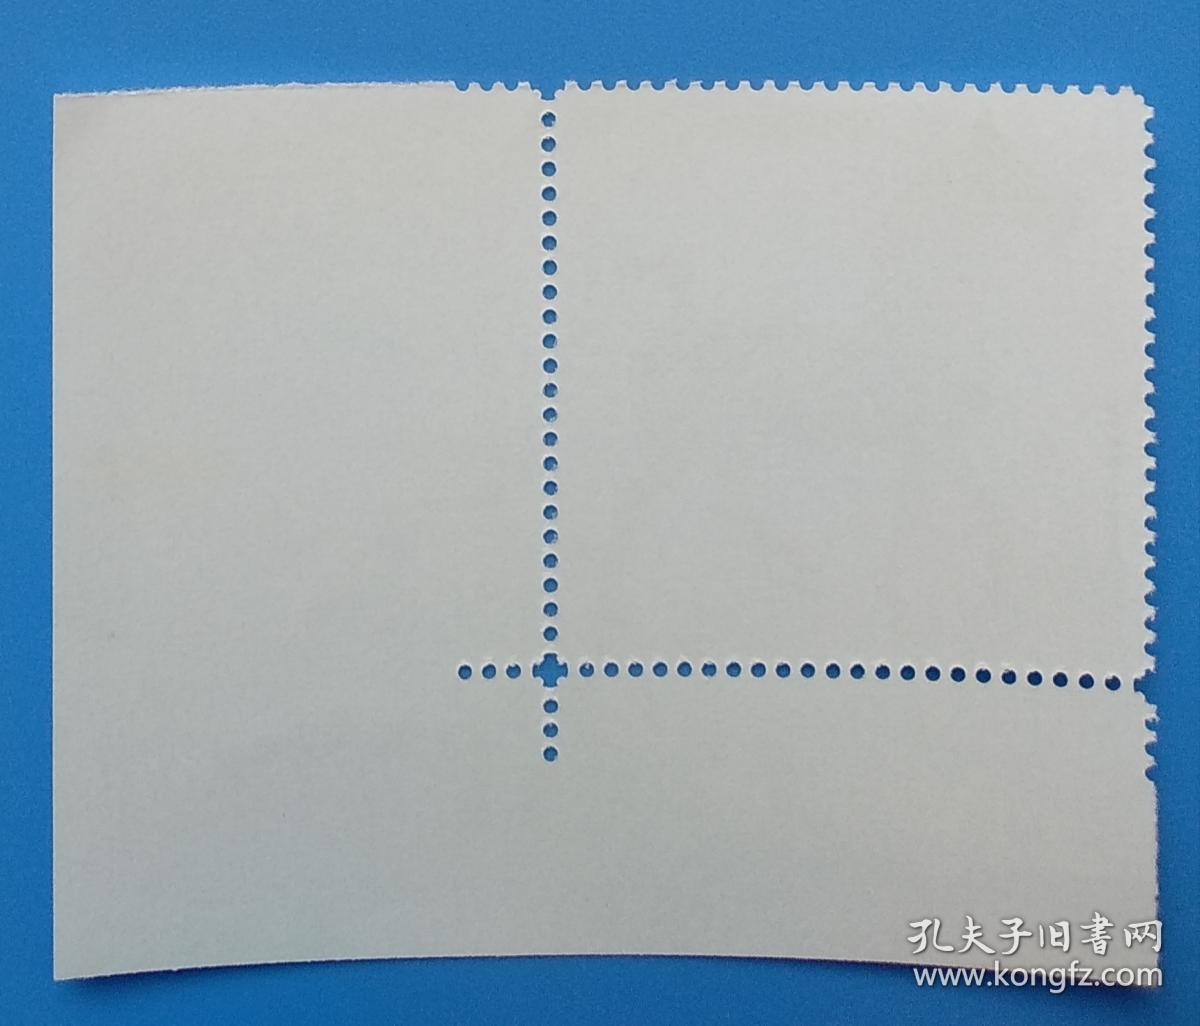 2003-23 中国2003第十六届亚洲国际邮票展览纪念邮票带厂铭纯蓝色标直角边